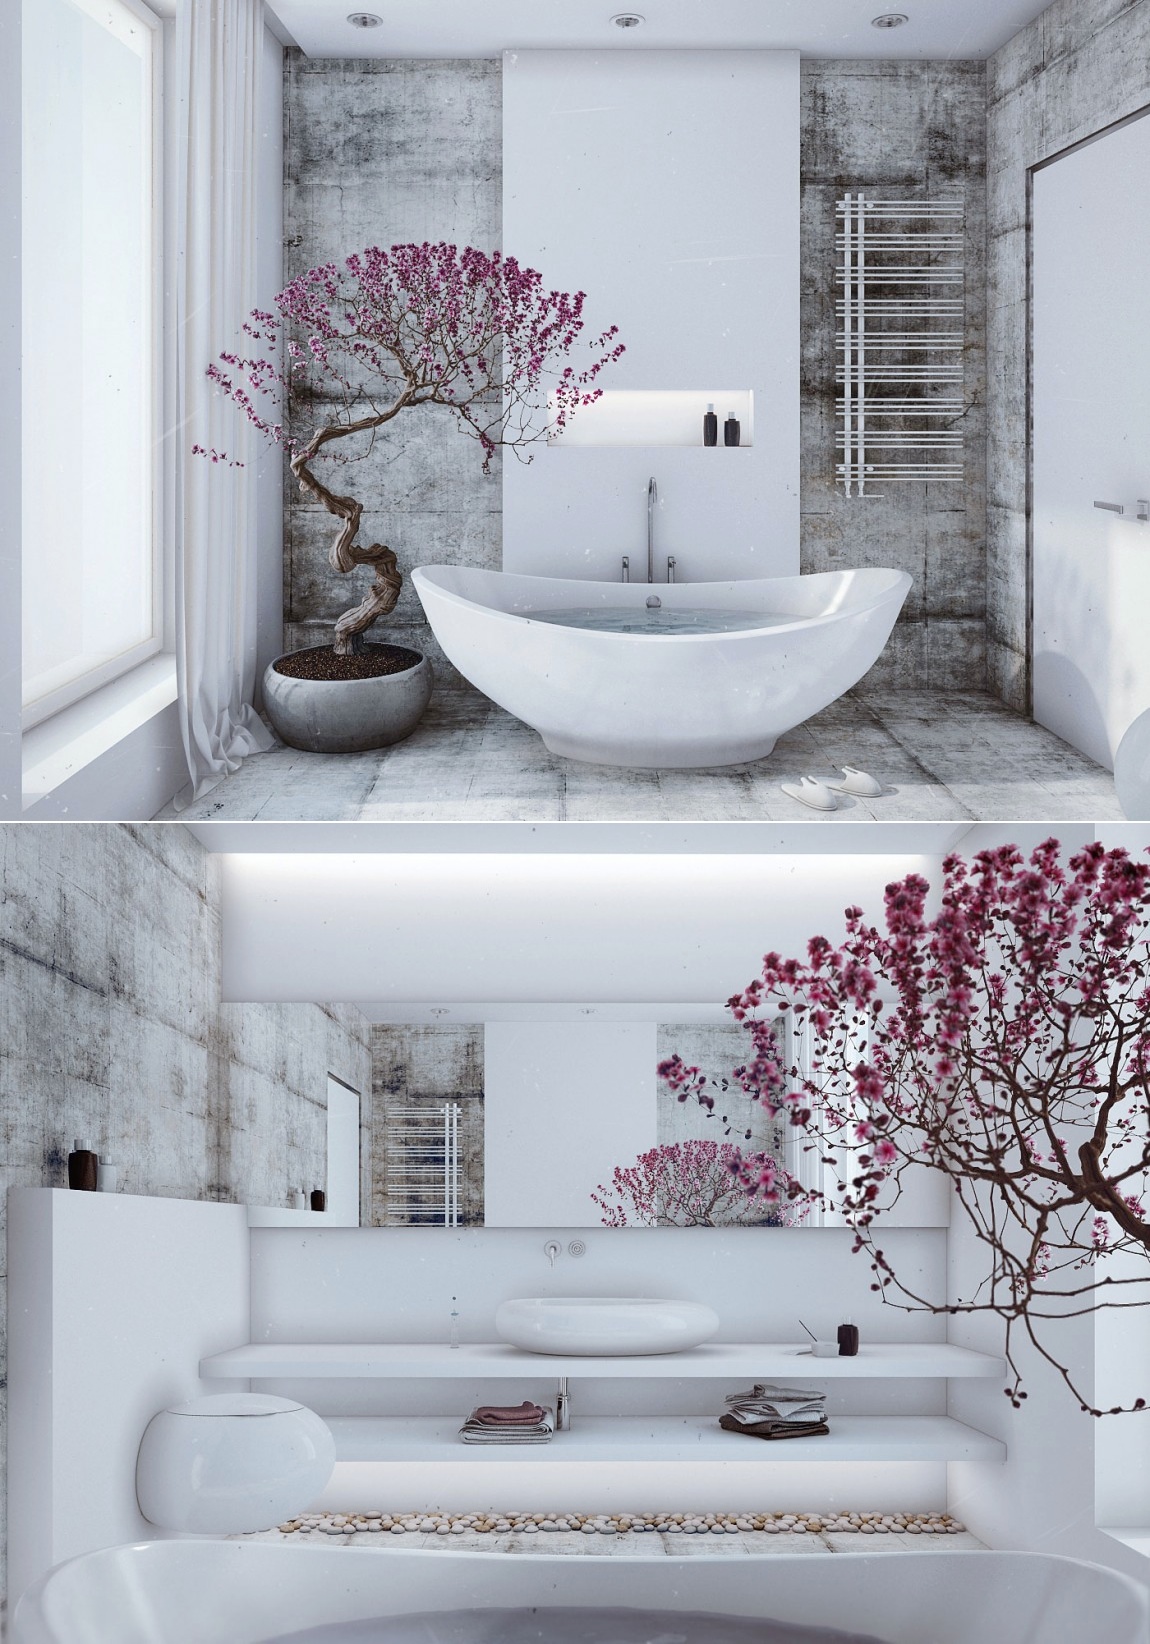 25 Peaceful Zen Bathroom Design Ideas - Decoration Love